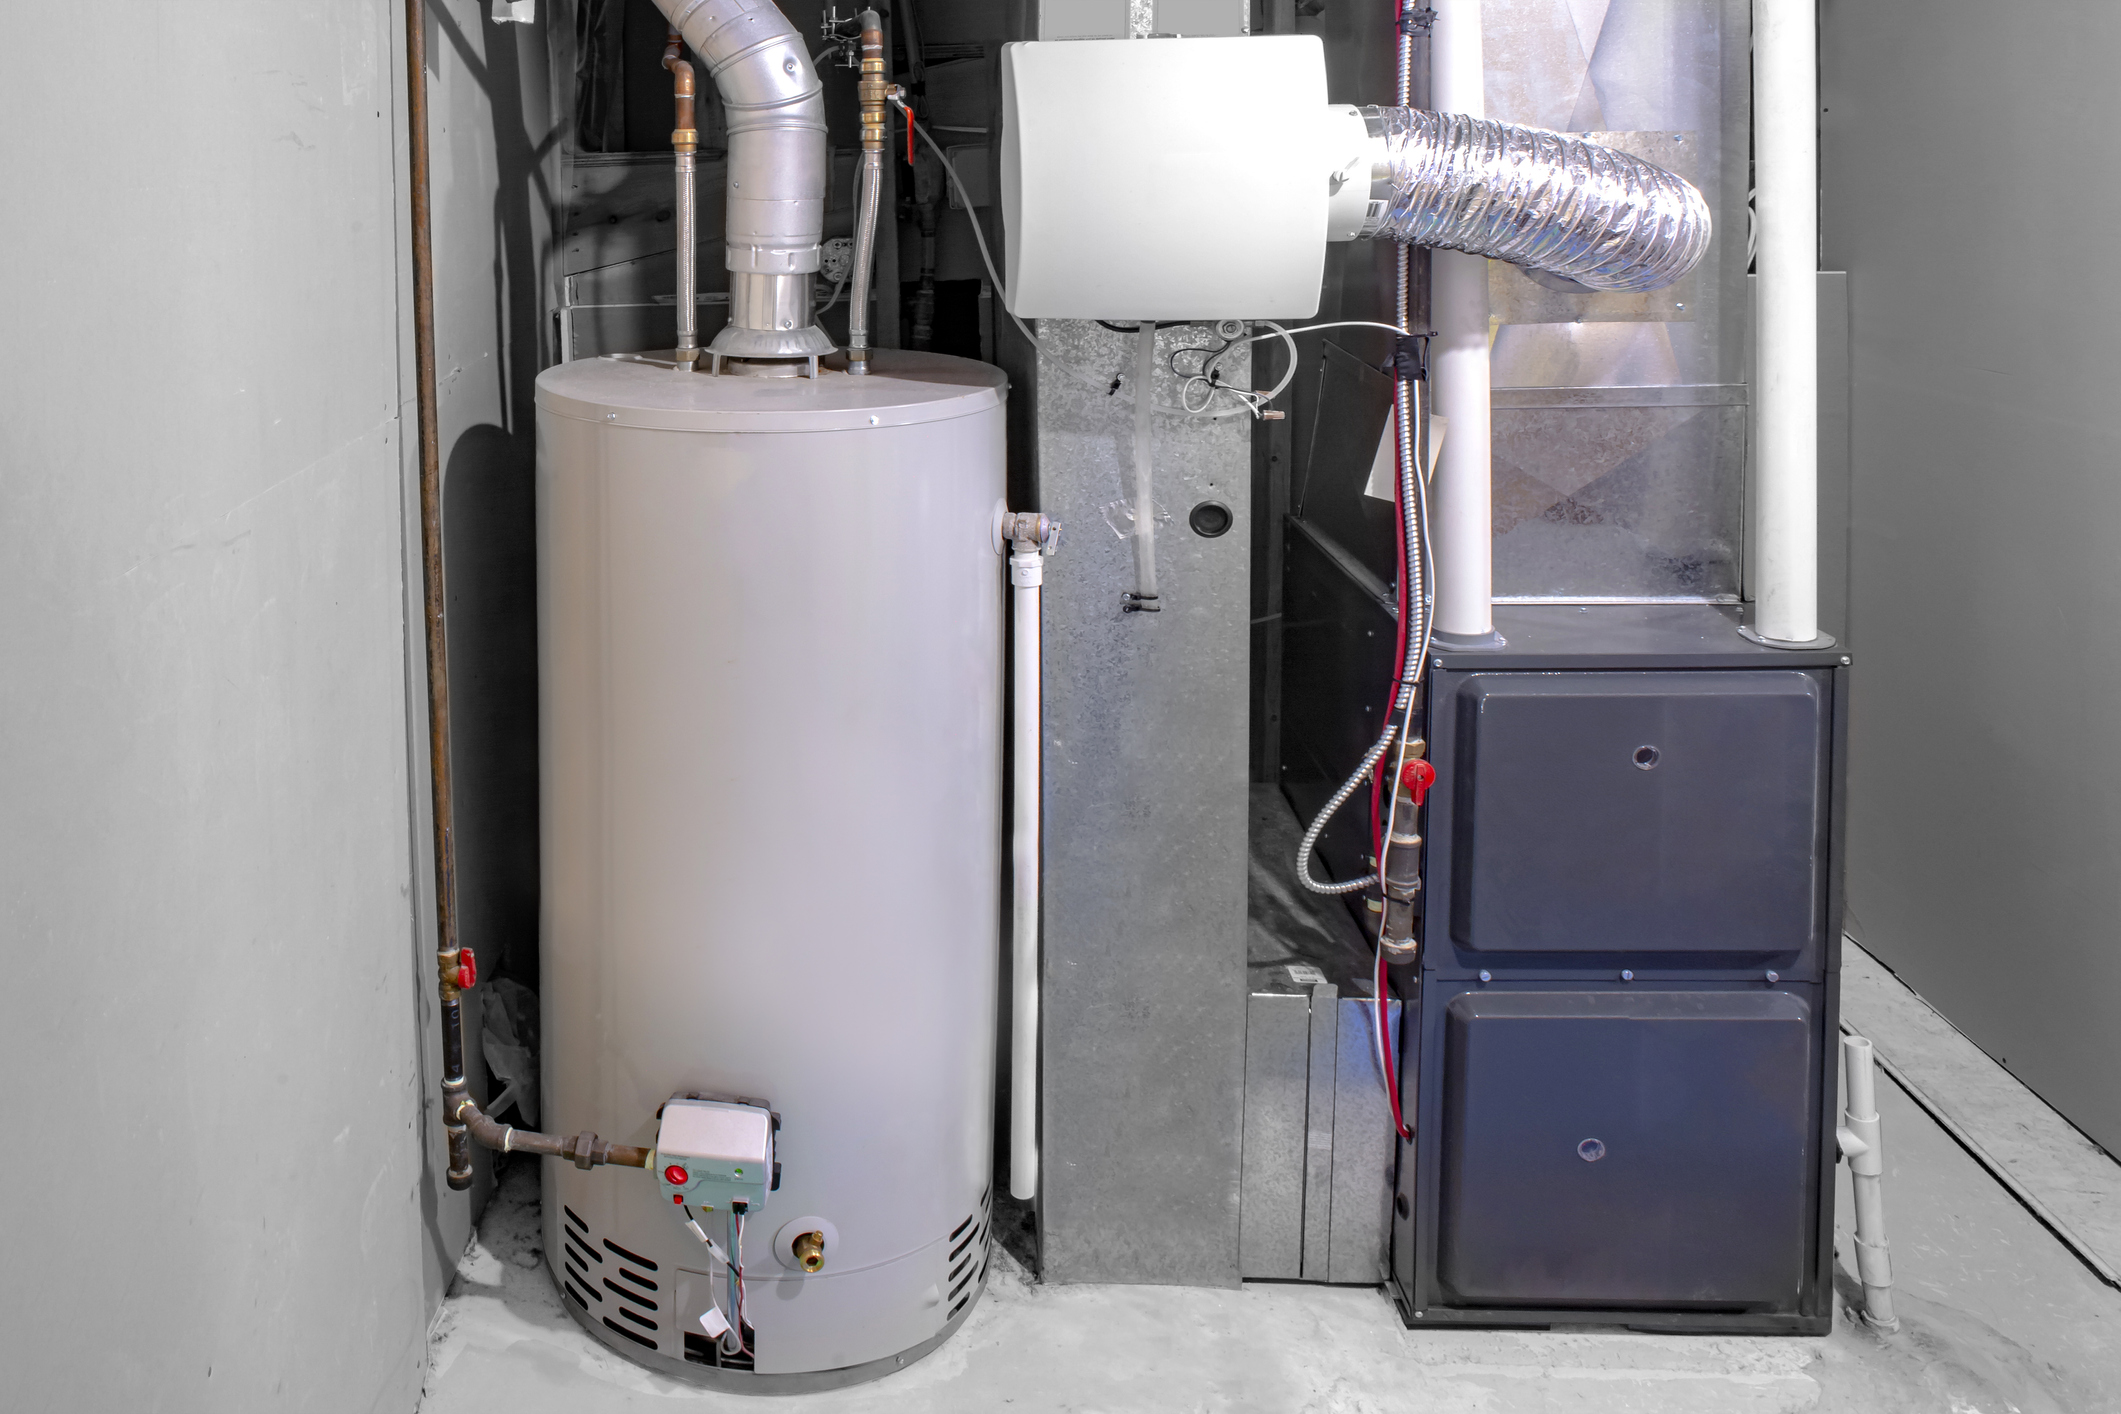 Tank water heater in a basement